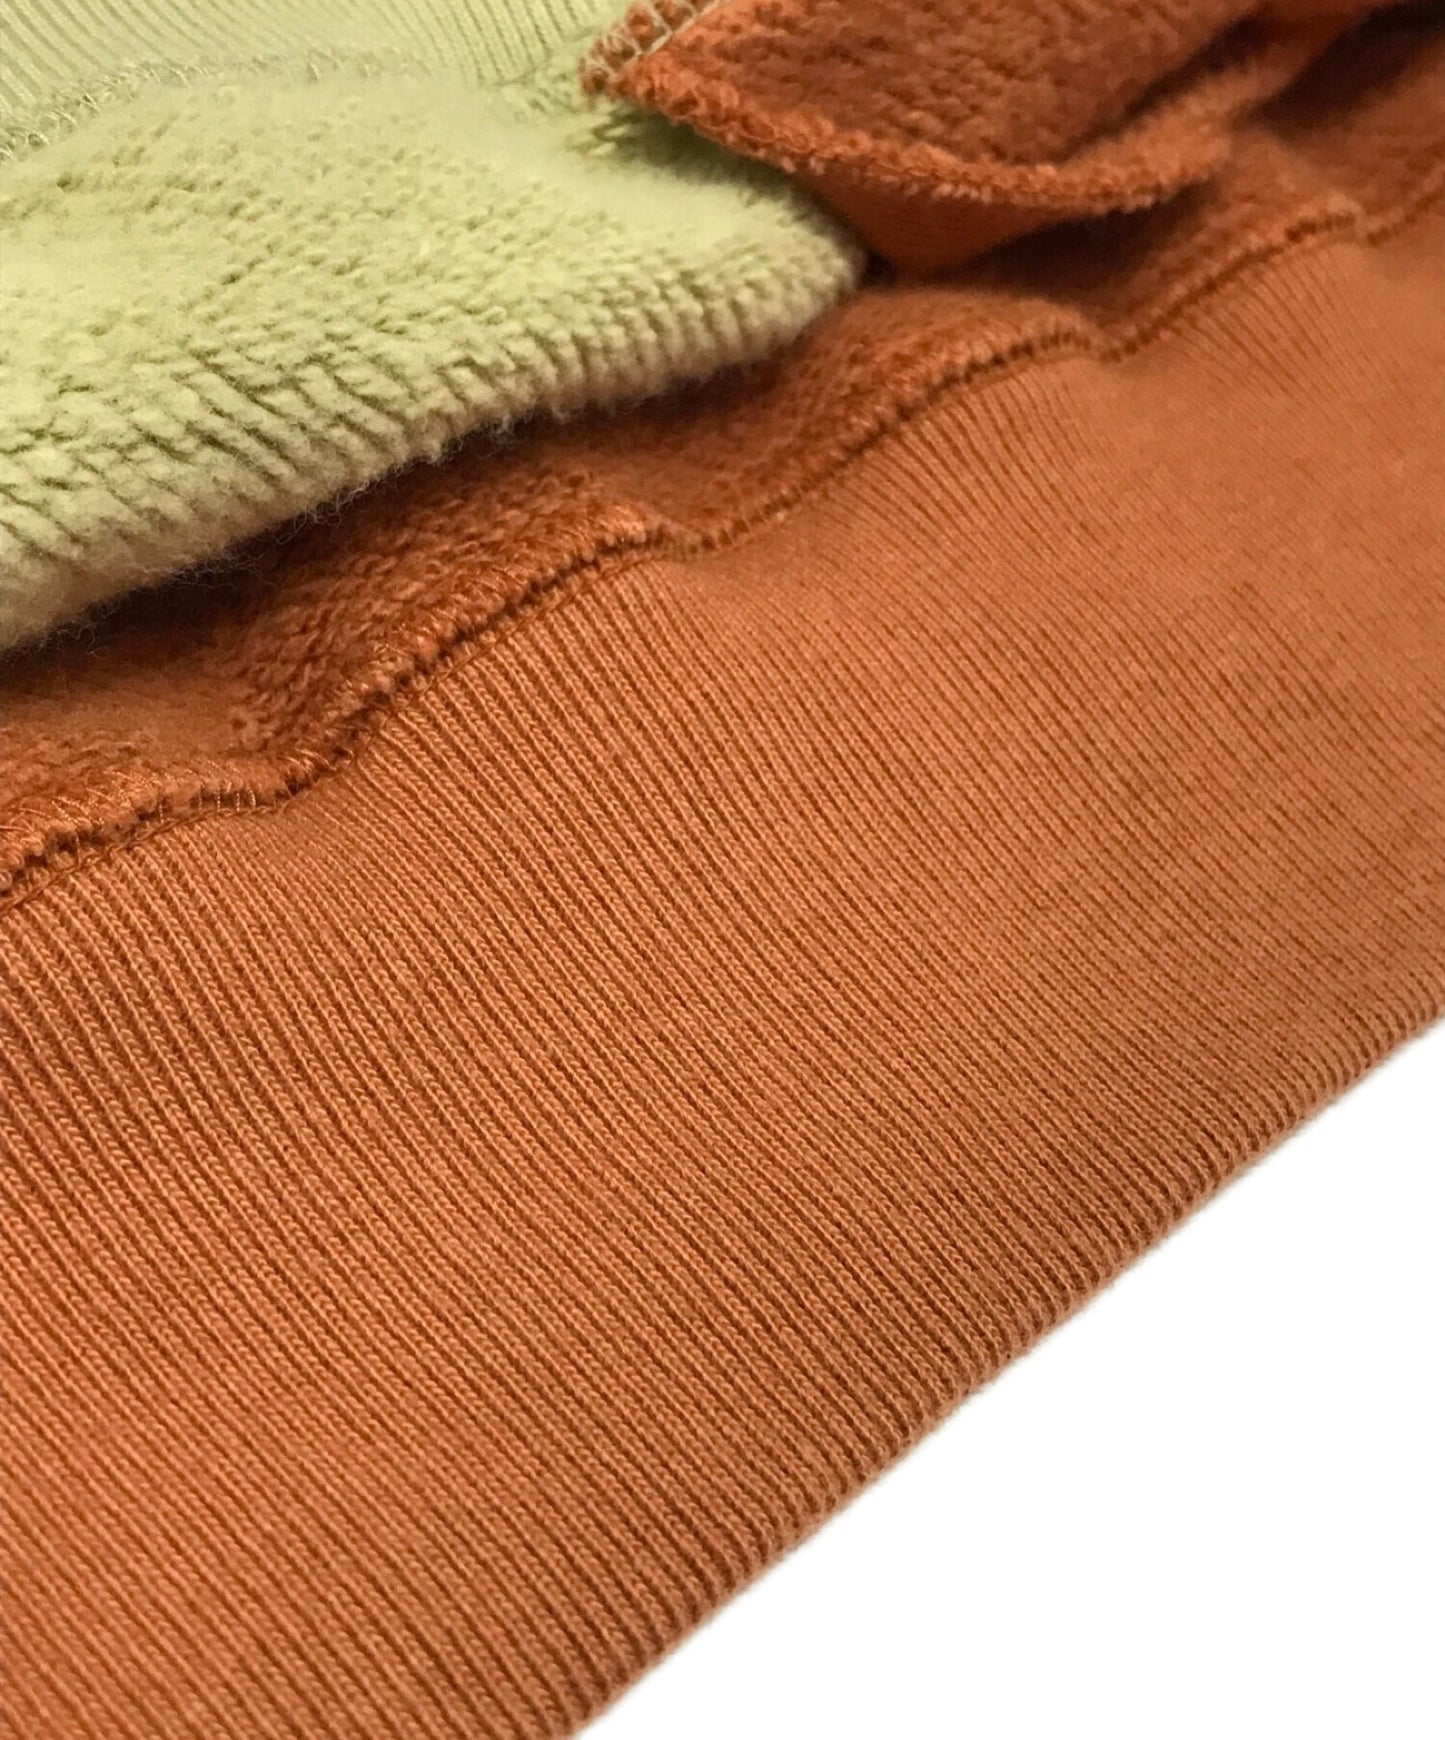 卧底发条橙色的高领衫印刷运动衫UCX4805-1